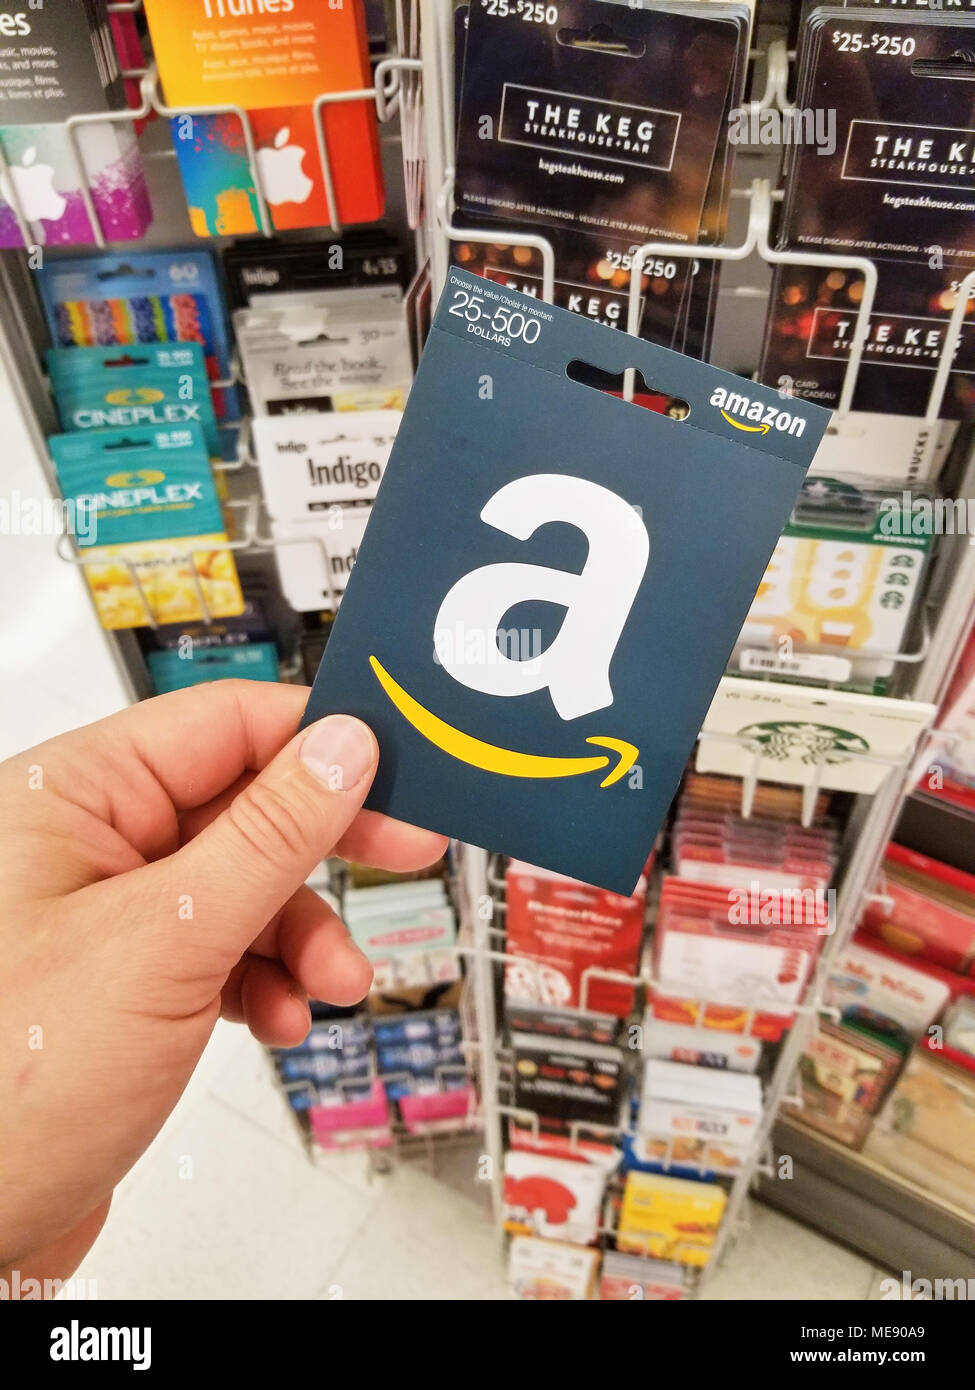 Montréal, Canada - le 7 novembre, 2017 : carte-cadeau Amazon dans une main  sur les cartes-cadeaux. Amazon est un américain du commerce électronique et  de cloud computin Photo Stock - Alamy